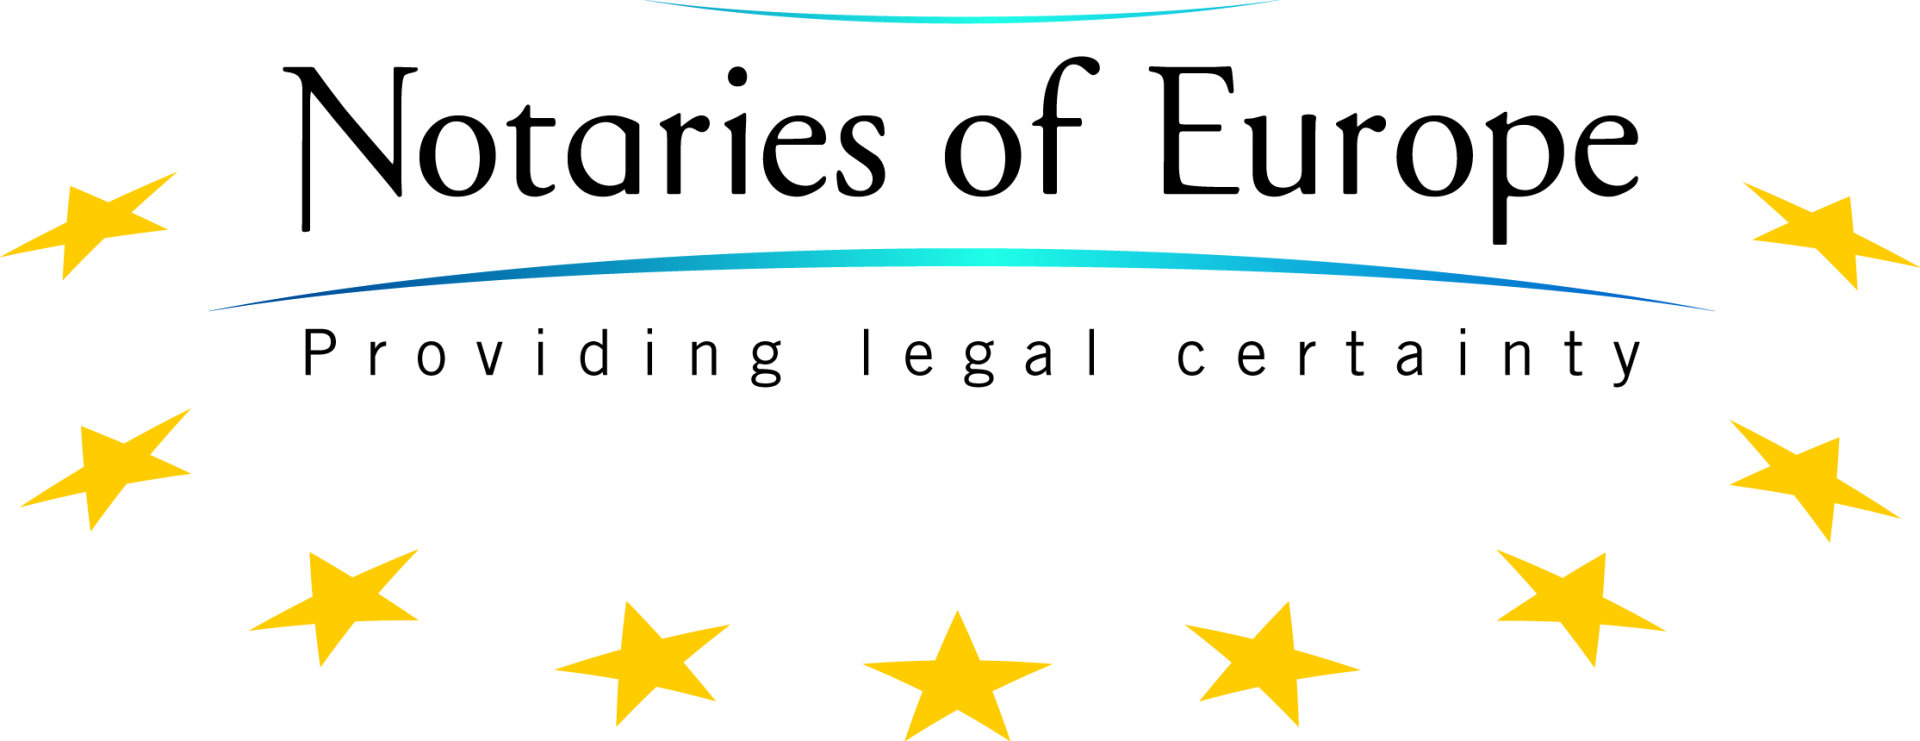 ES notariatų tarybai 2019 metais vadovaus Prancūzijos notaras